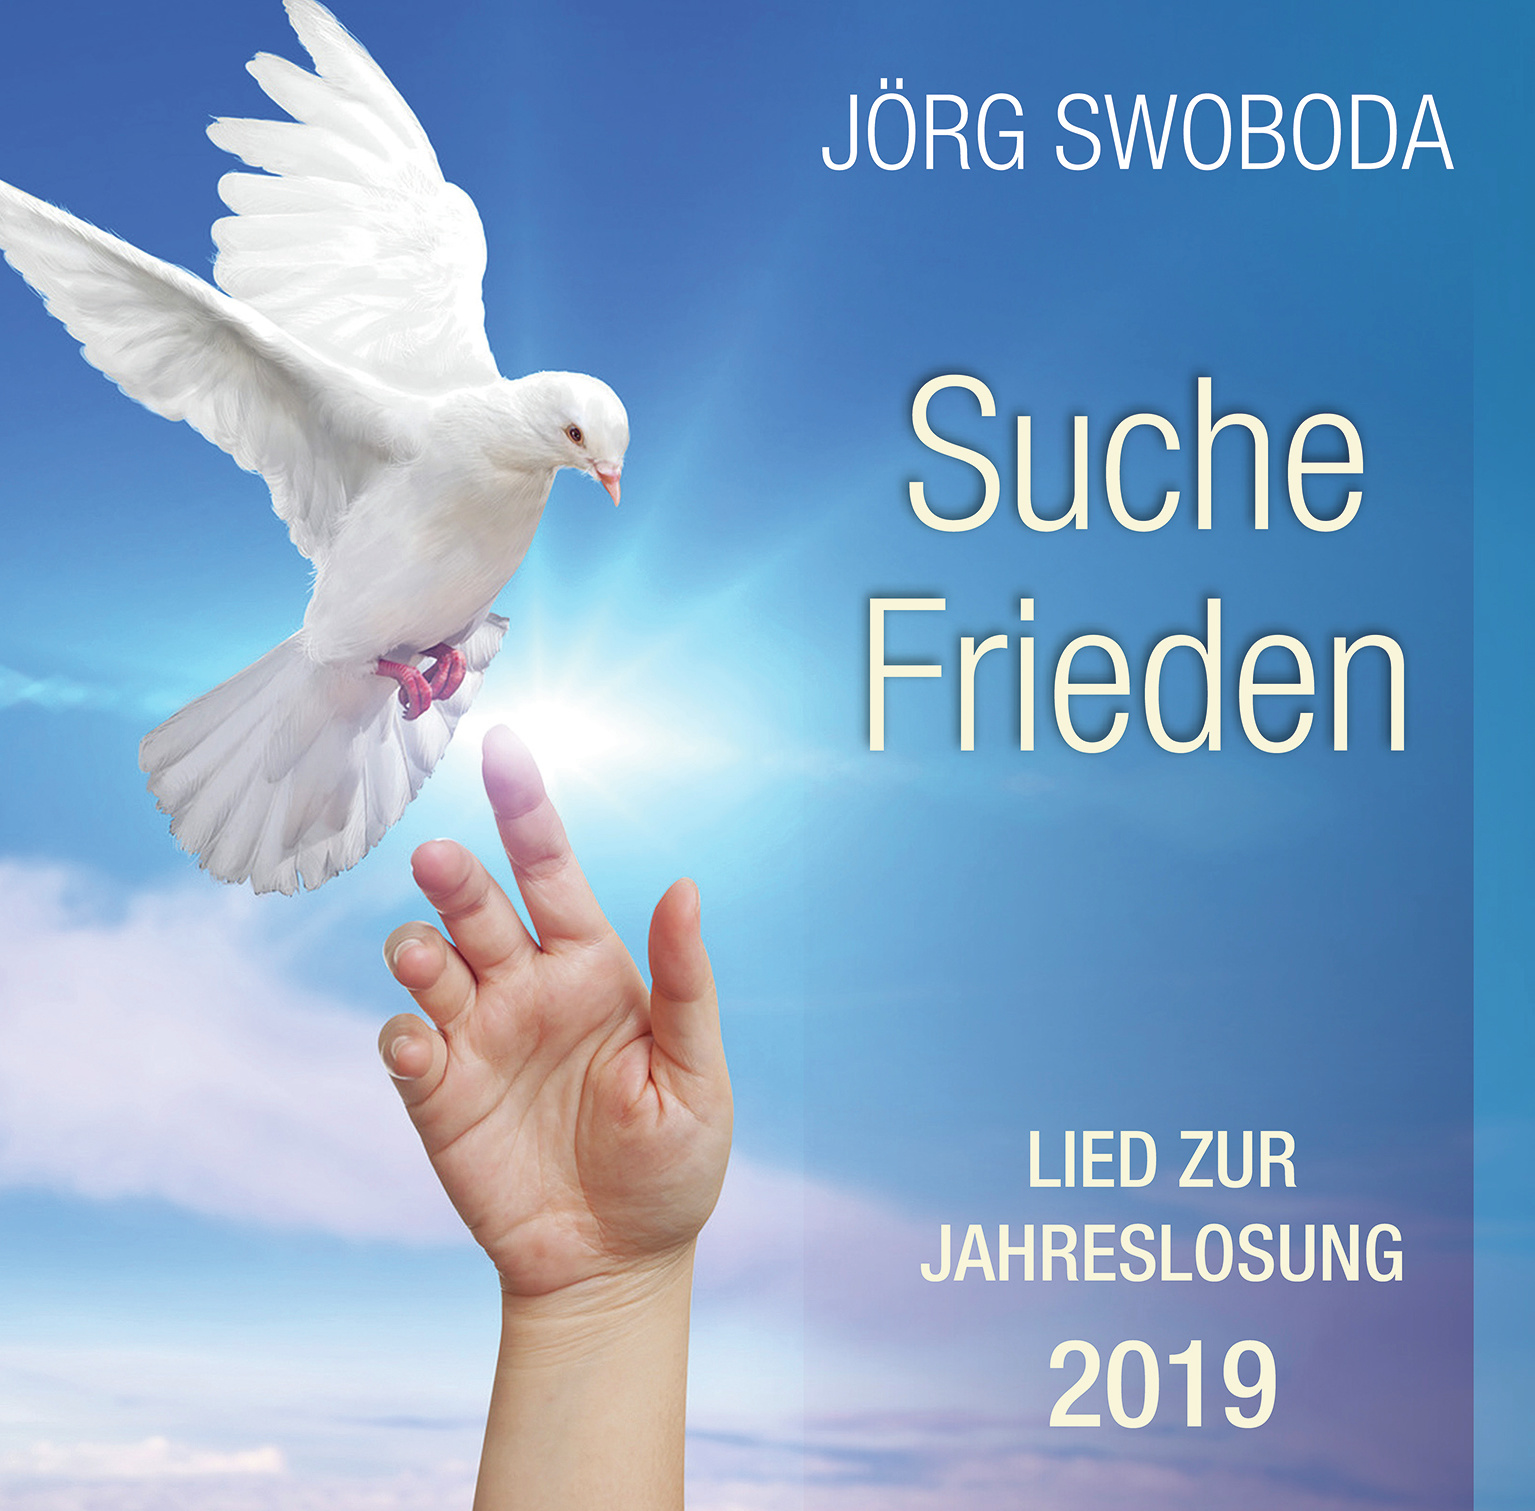 Lebenswasser umsonst / Suche Frieden - Lieder zu den Jahreslosungen 2018/2019